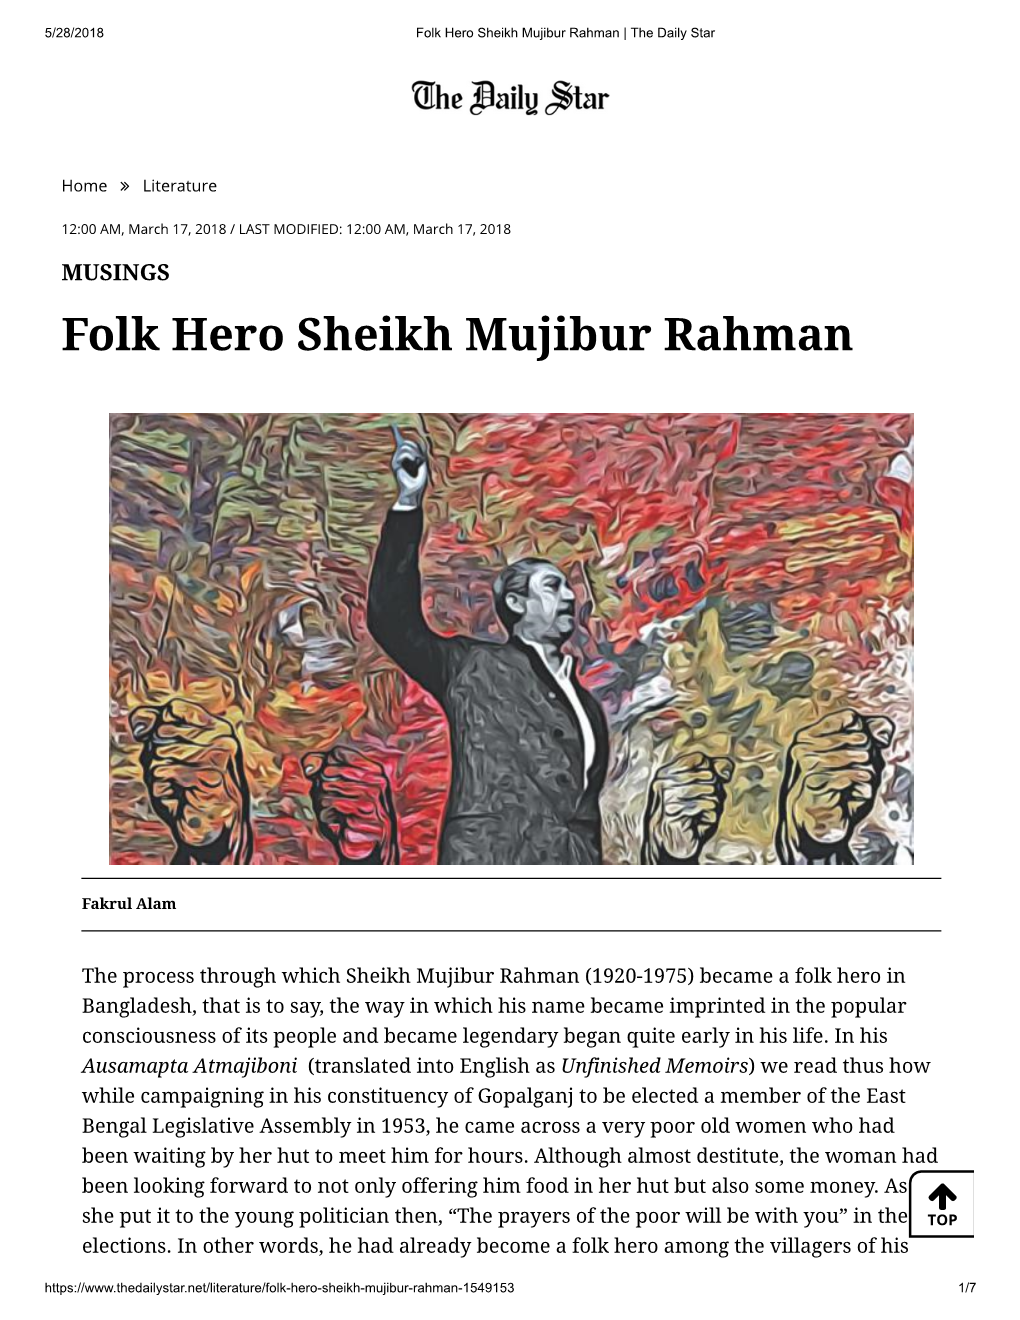 Folk Hero Sheikh Mujibur Rahman | the Daily Star